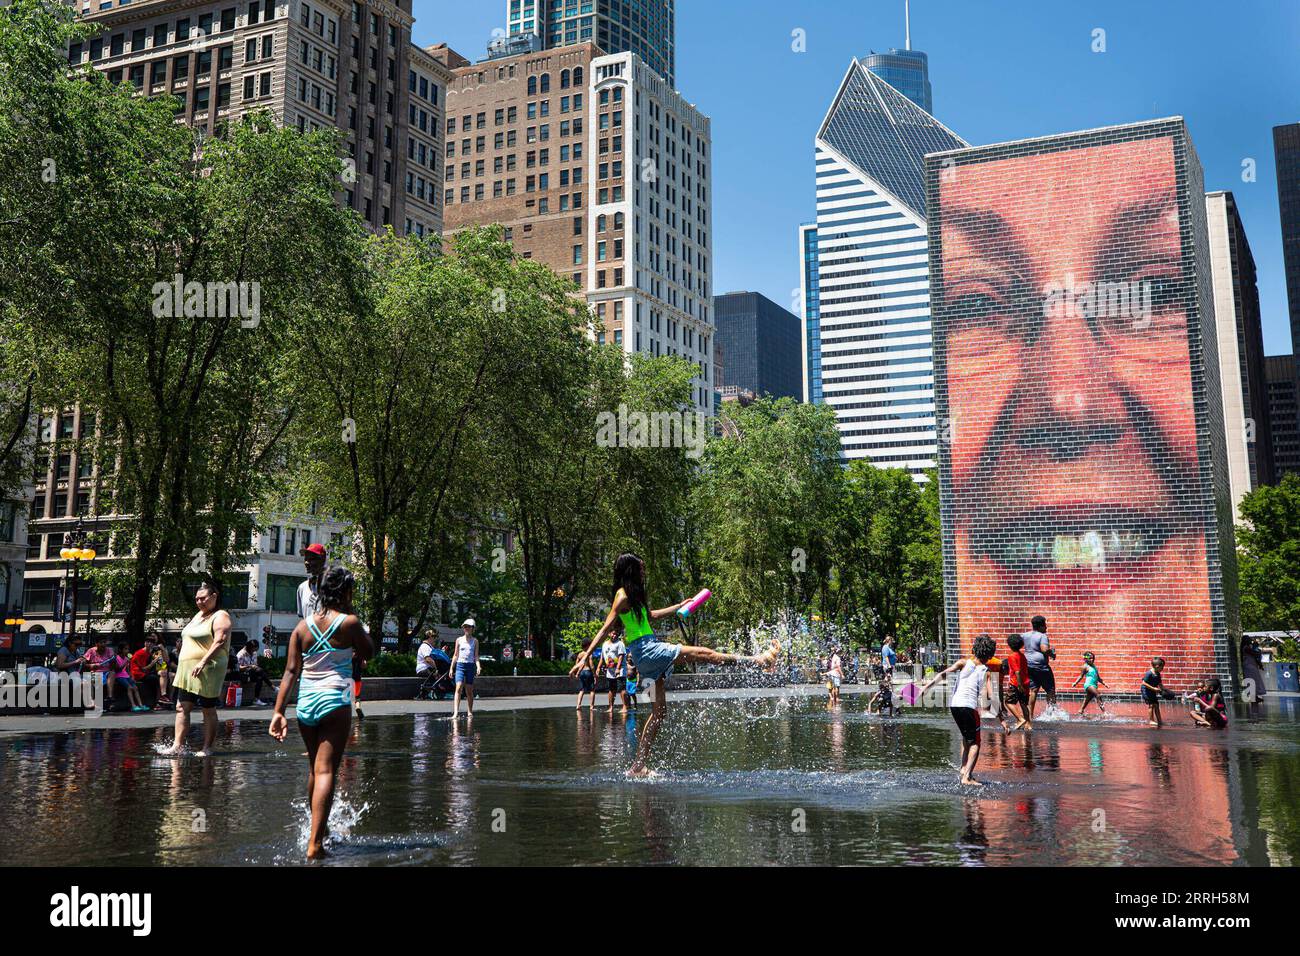 News Bilder des Tages 220614 -- CHICAGO U.S., 14 giugno 2022 -- la gente gioca con l'acqua al Crown Fountain nel centro di Chicago, negli Stati Uniti, il 14 giugno 2022. L'area metropolitana di Chicago si sta preparando per un'ondata di calore, poiché il servizio meteorologico nazionale degli Stati Uniti ha emesso un avviso di calore per l'area lunedì. Foto di /Xinhua U.S.-CHICAGO-HEAT WAVE VincentxD.xJohnson PUBLICATIONxNOTxINxCHN Foto Stock